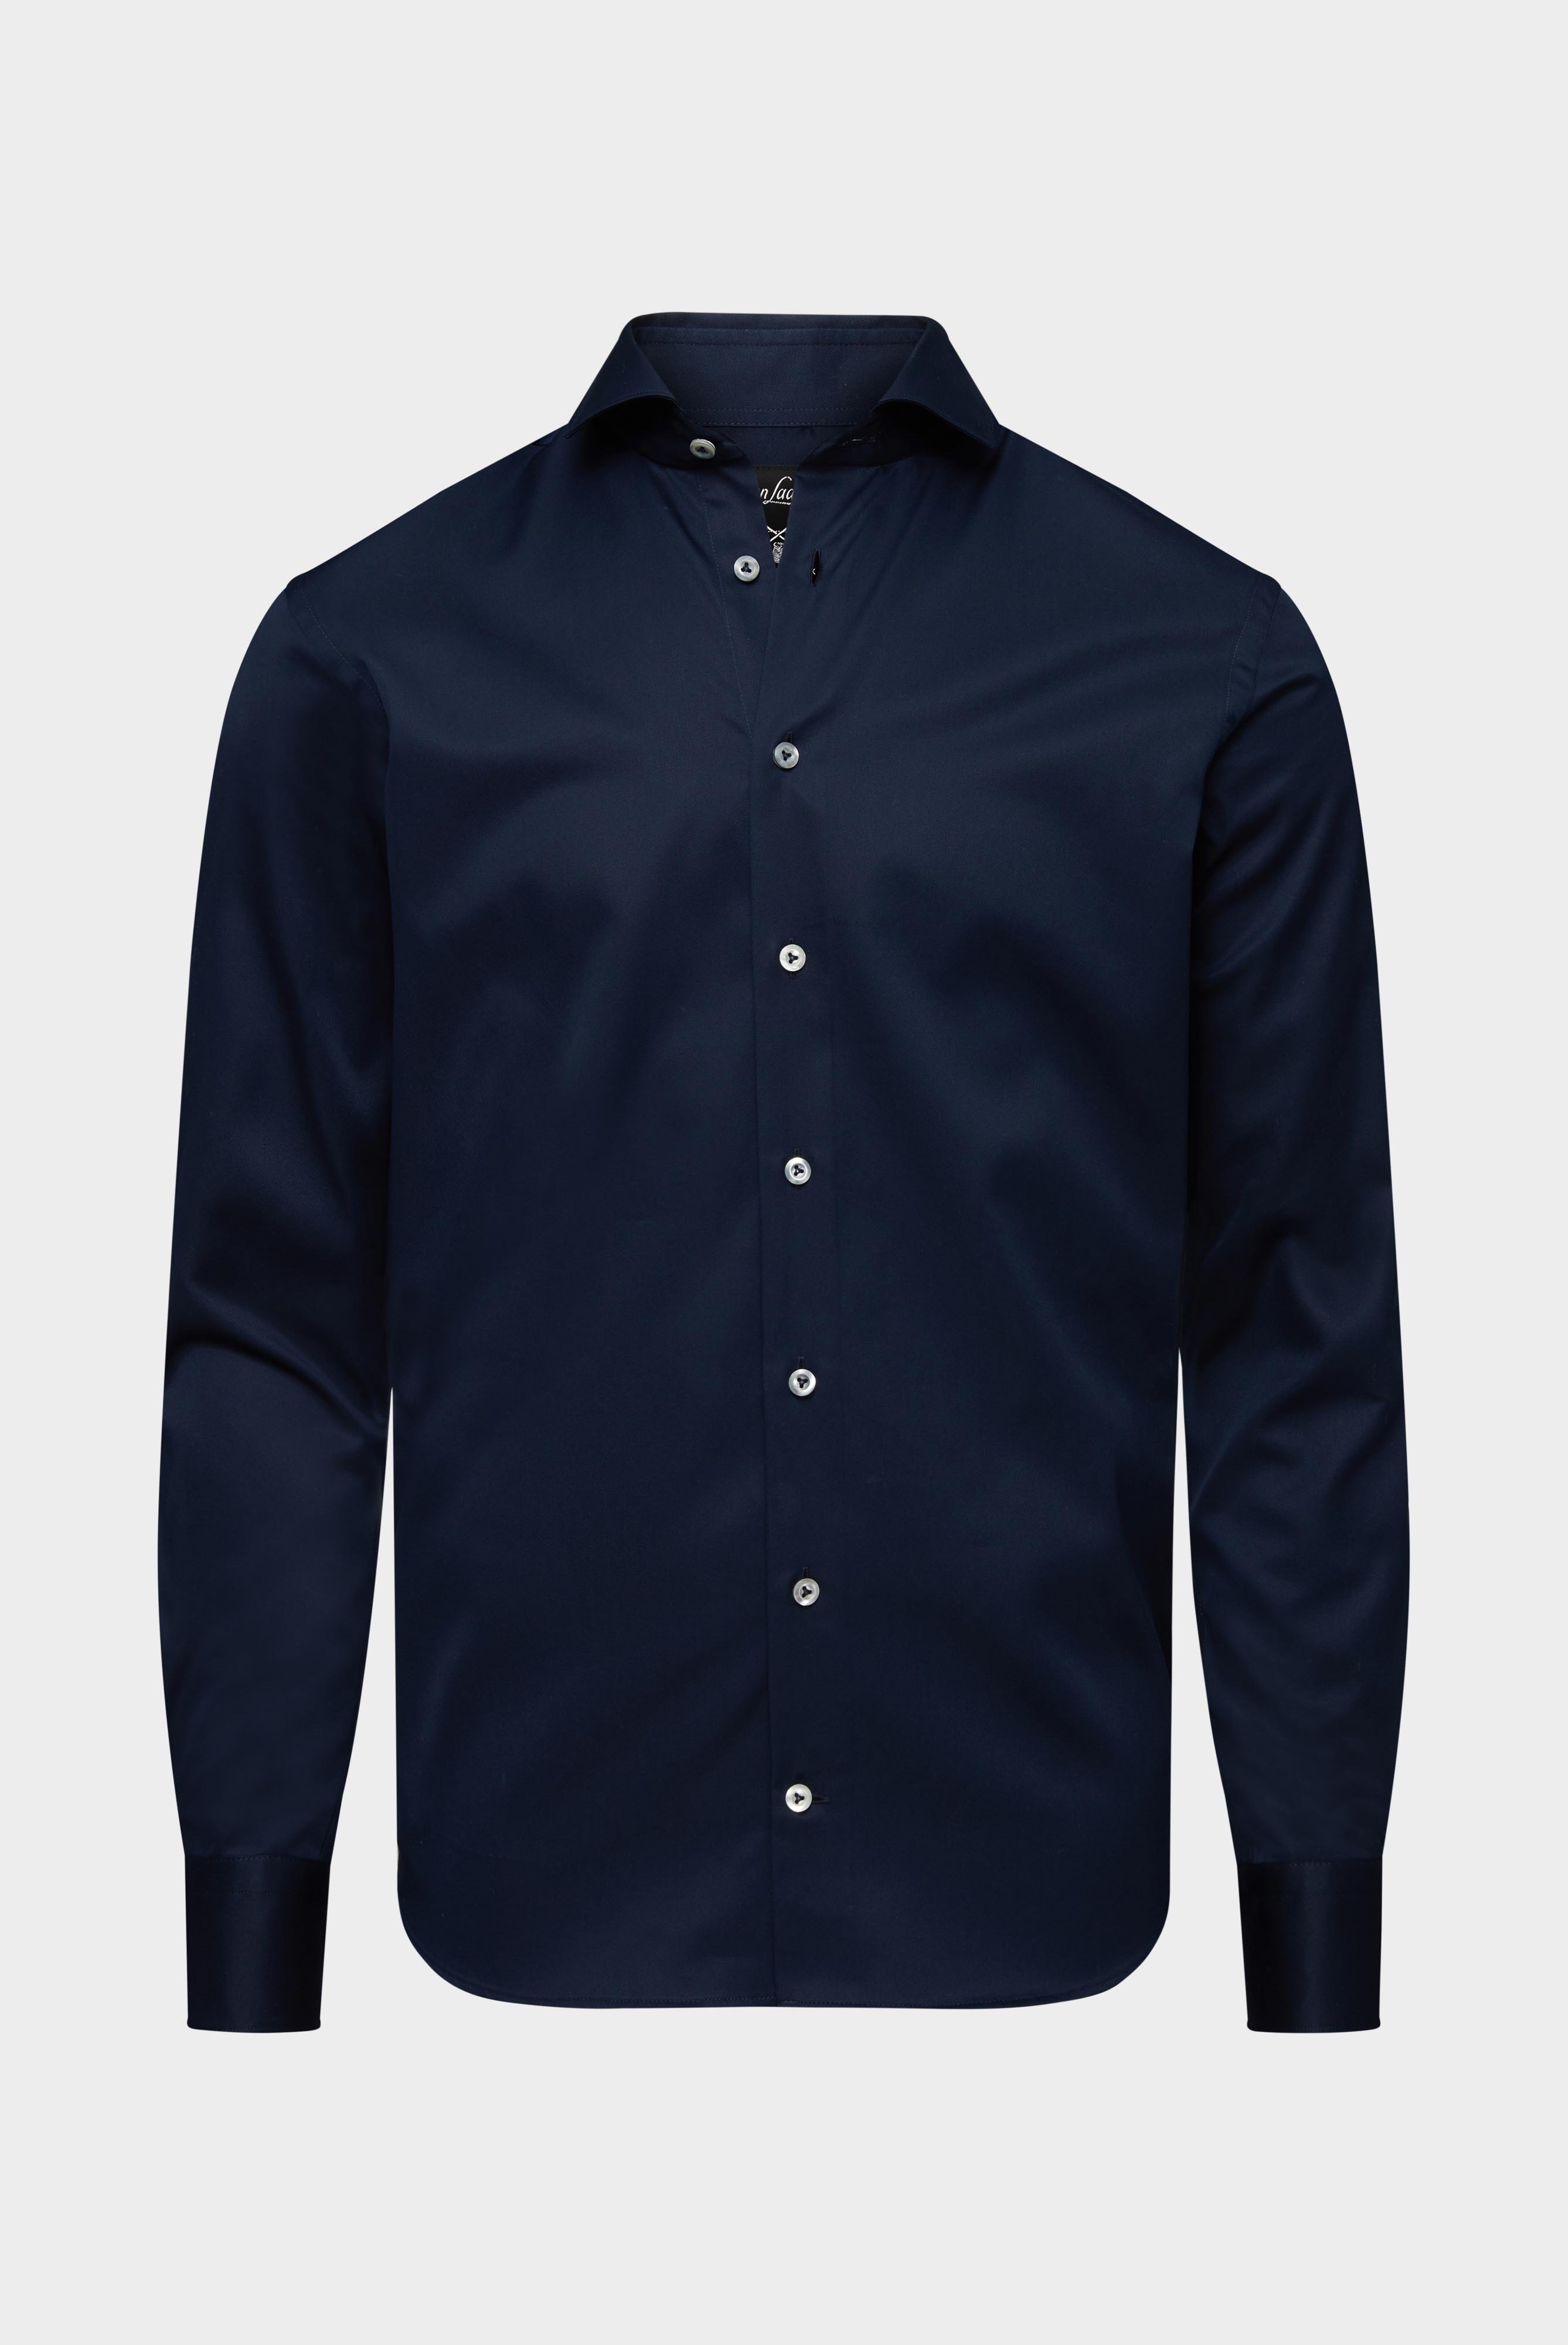 Bügelleichte Hemden+Bügelfreies Hybridshirt mit Jerseyeinsatz Slim Fit+20.2553.0F.132241.785.42